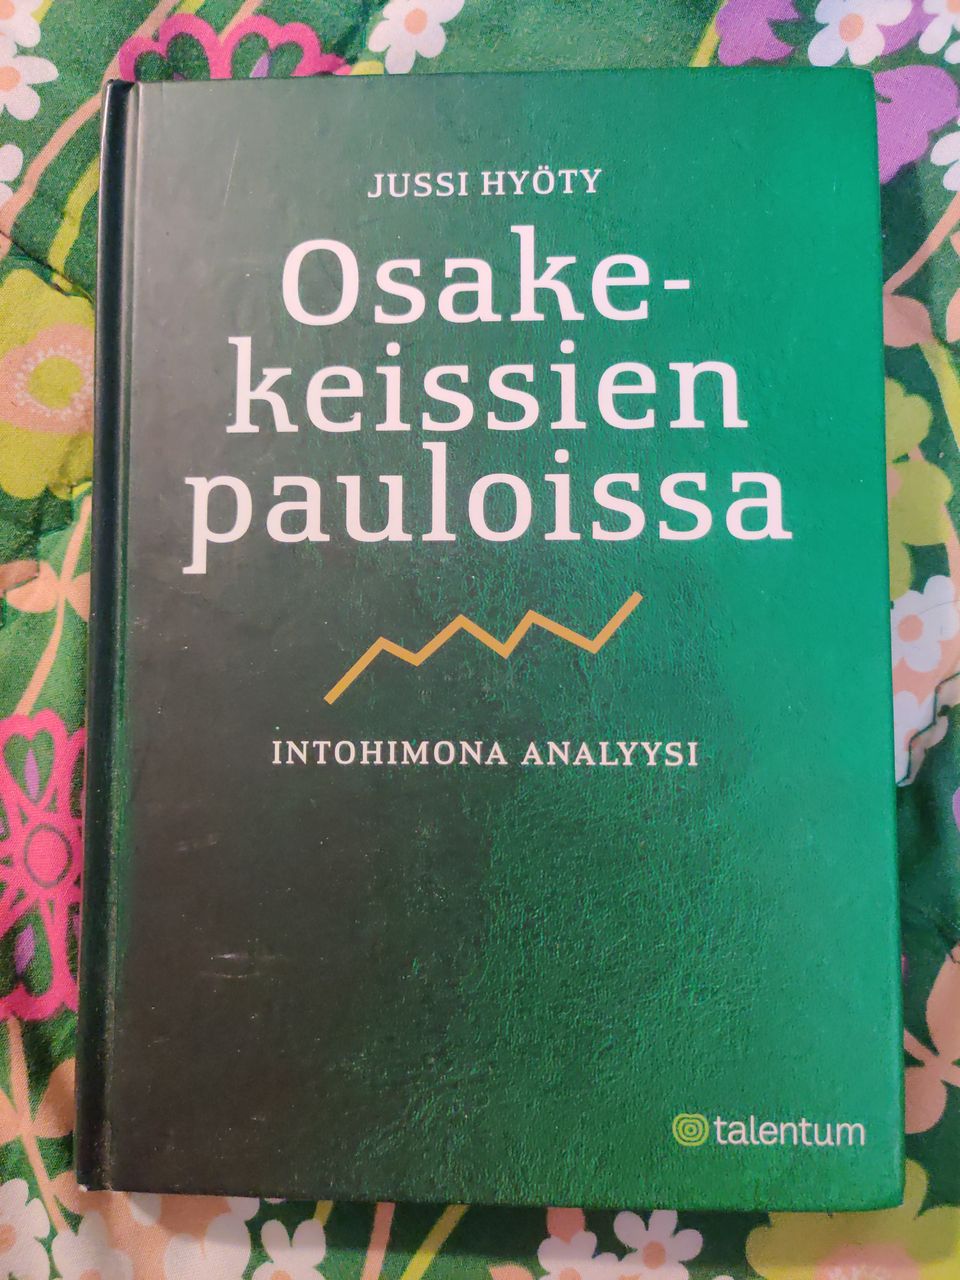 Jussi Hyöty : Osakekeissien pauloissa - intohimona analyysi